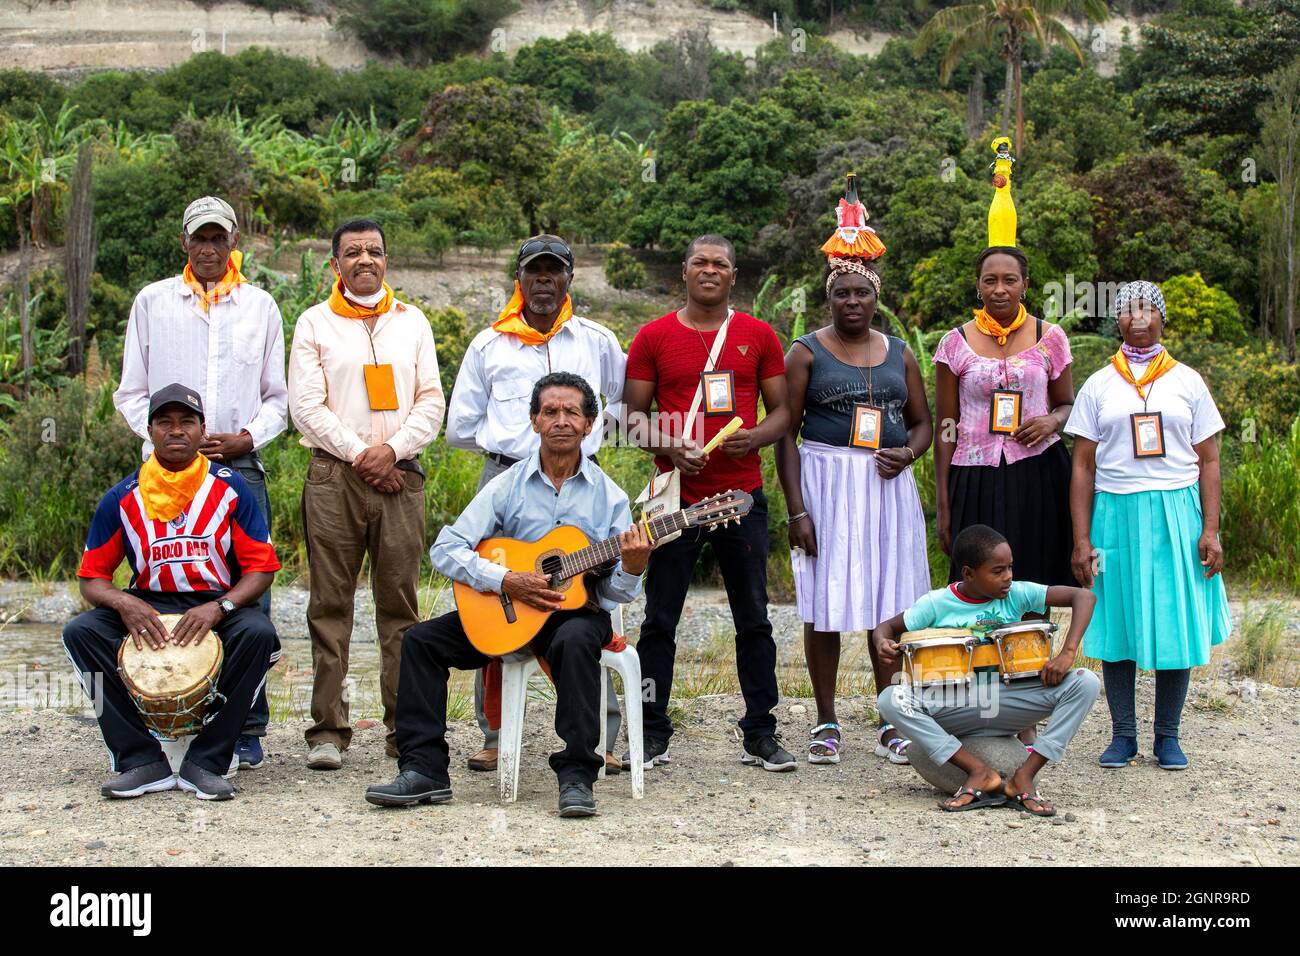 Afro-Ecuadorian group posing in Valle del Chota, Ecuador Stock Photo